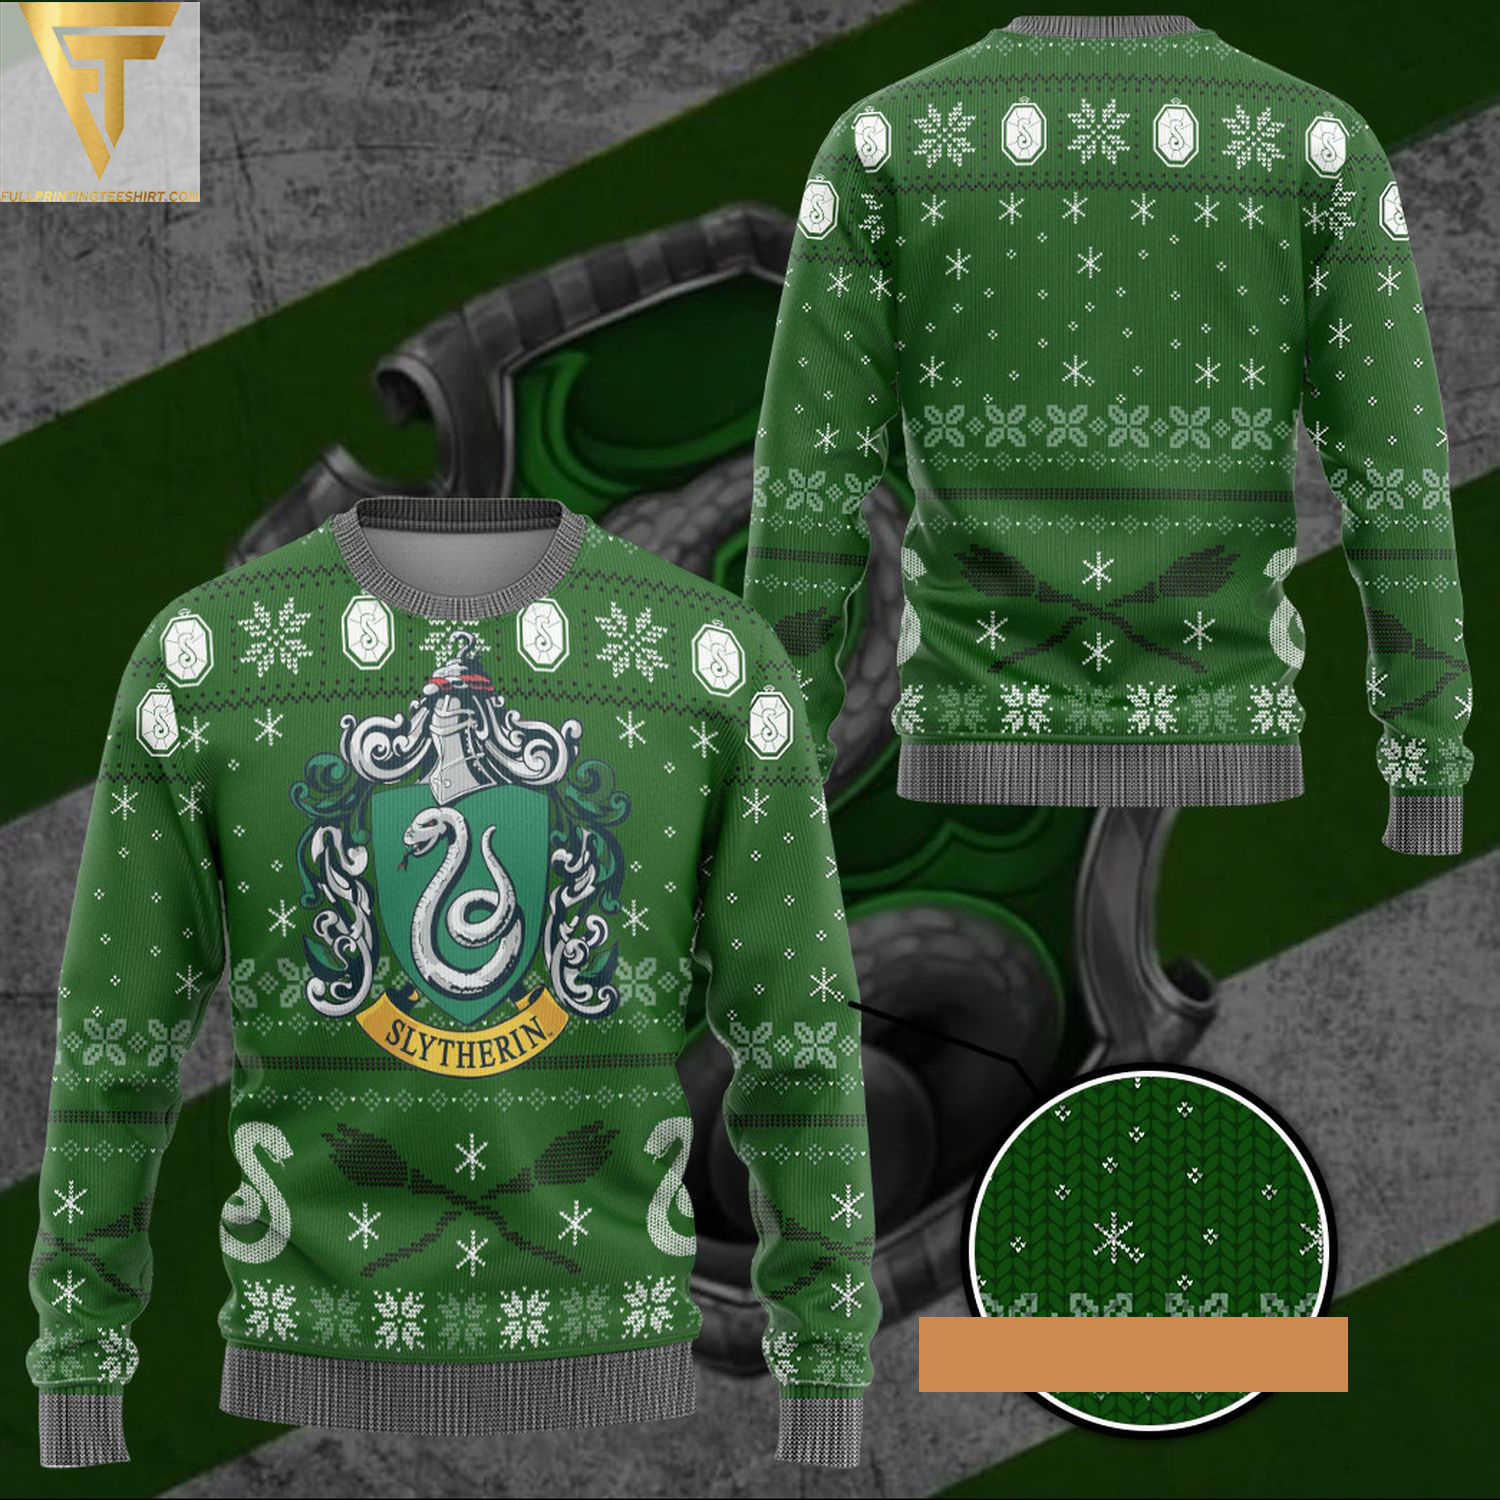 Harry potter slytherin ugly christmas sweater - Copy (2)